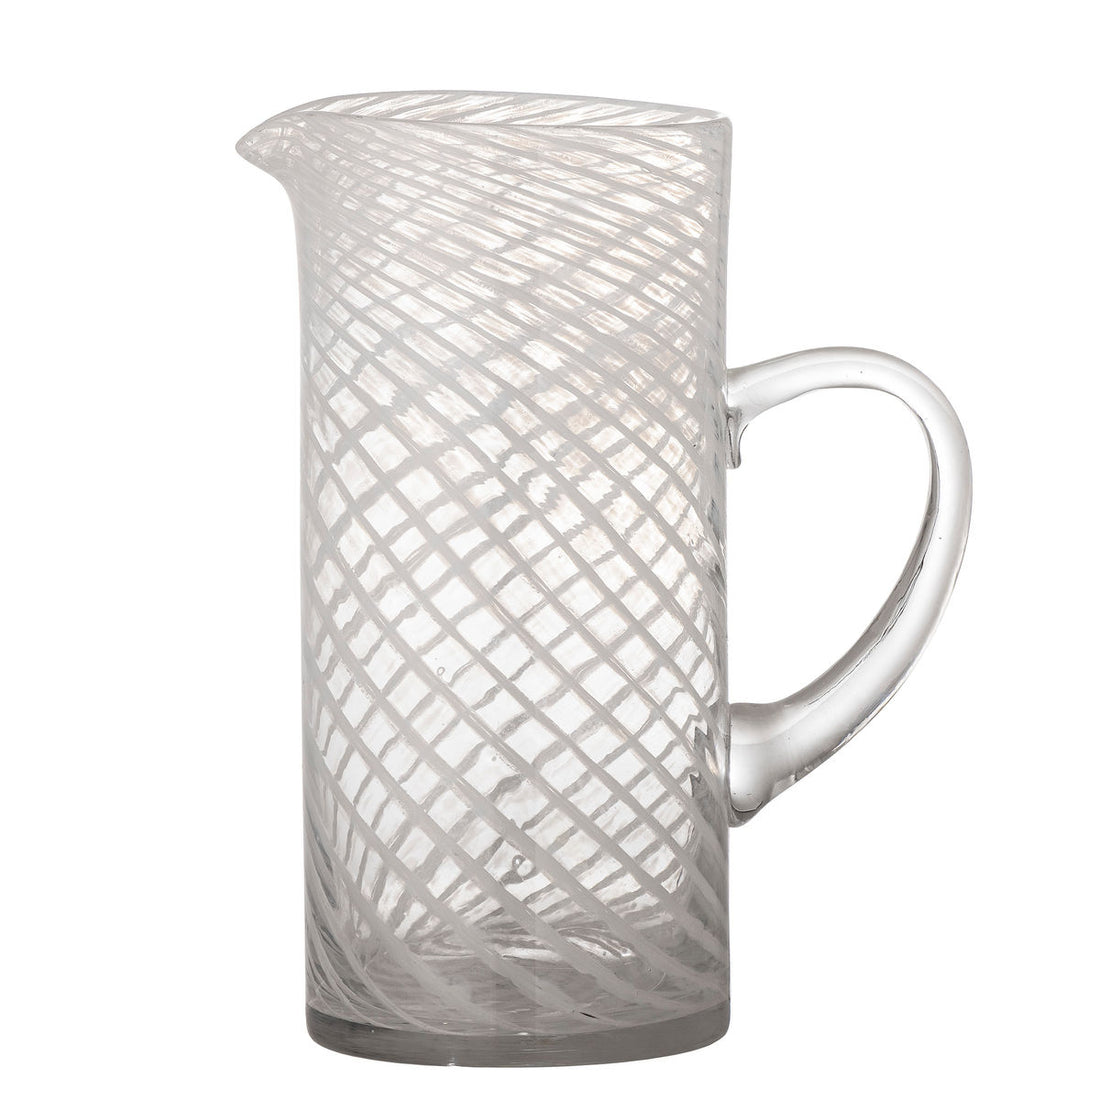 Bloomingville Sakhi pitcher, white, glass